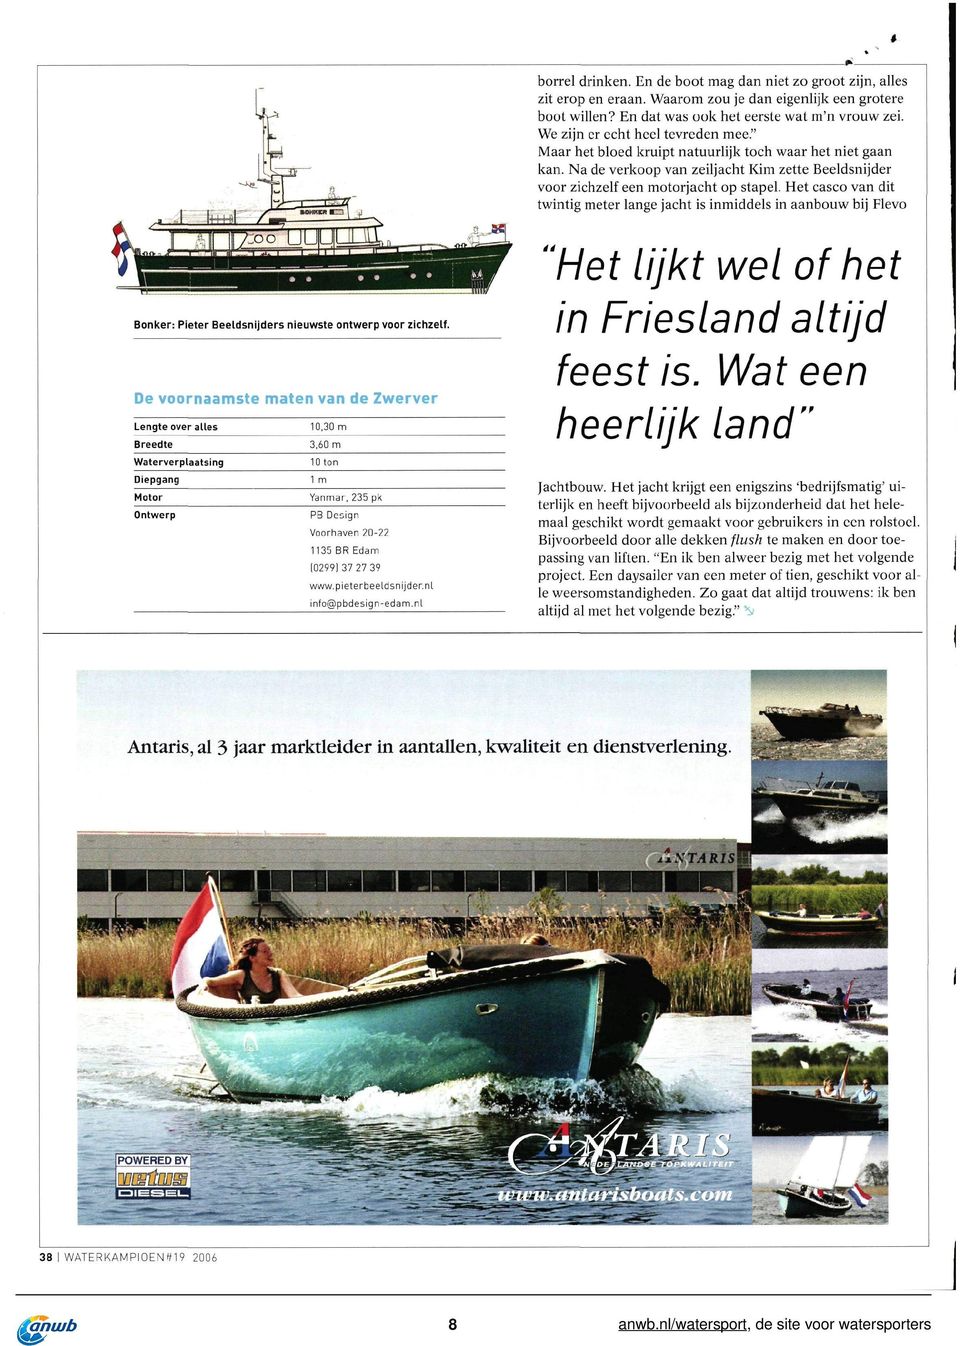 Het casco van dit twintig meter lange jacht is inmiddels in aanbouw bij Flevo Bonken Pieter Beeldsnijders nieuwste ontwerp voor zichzelf.